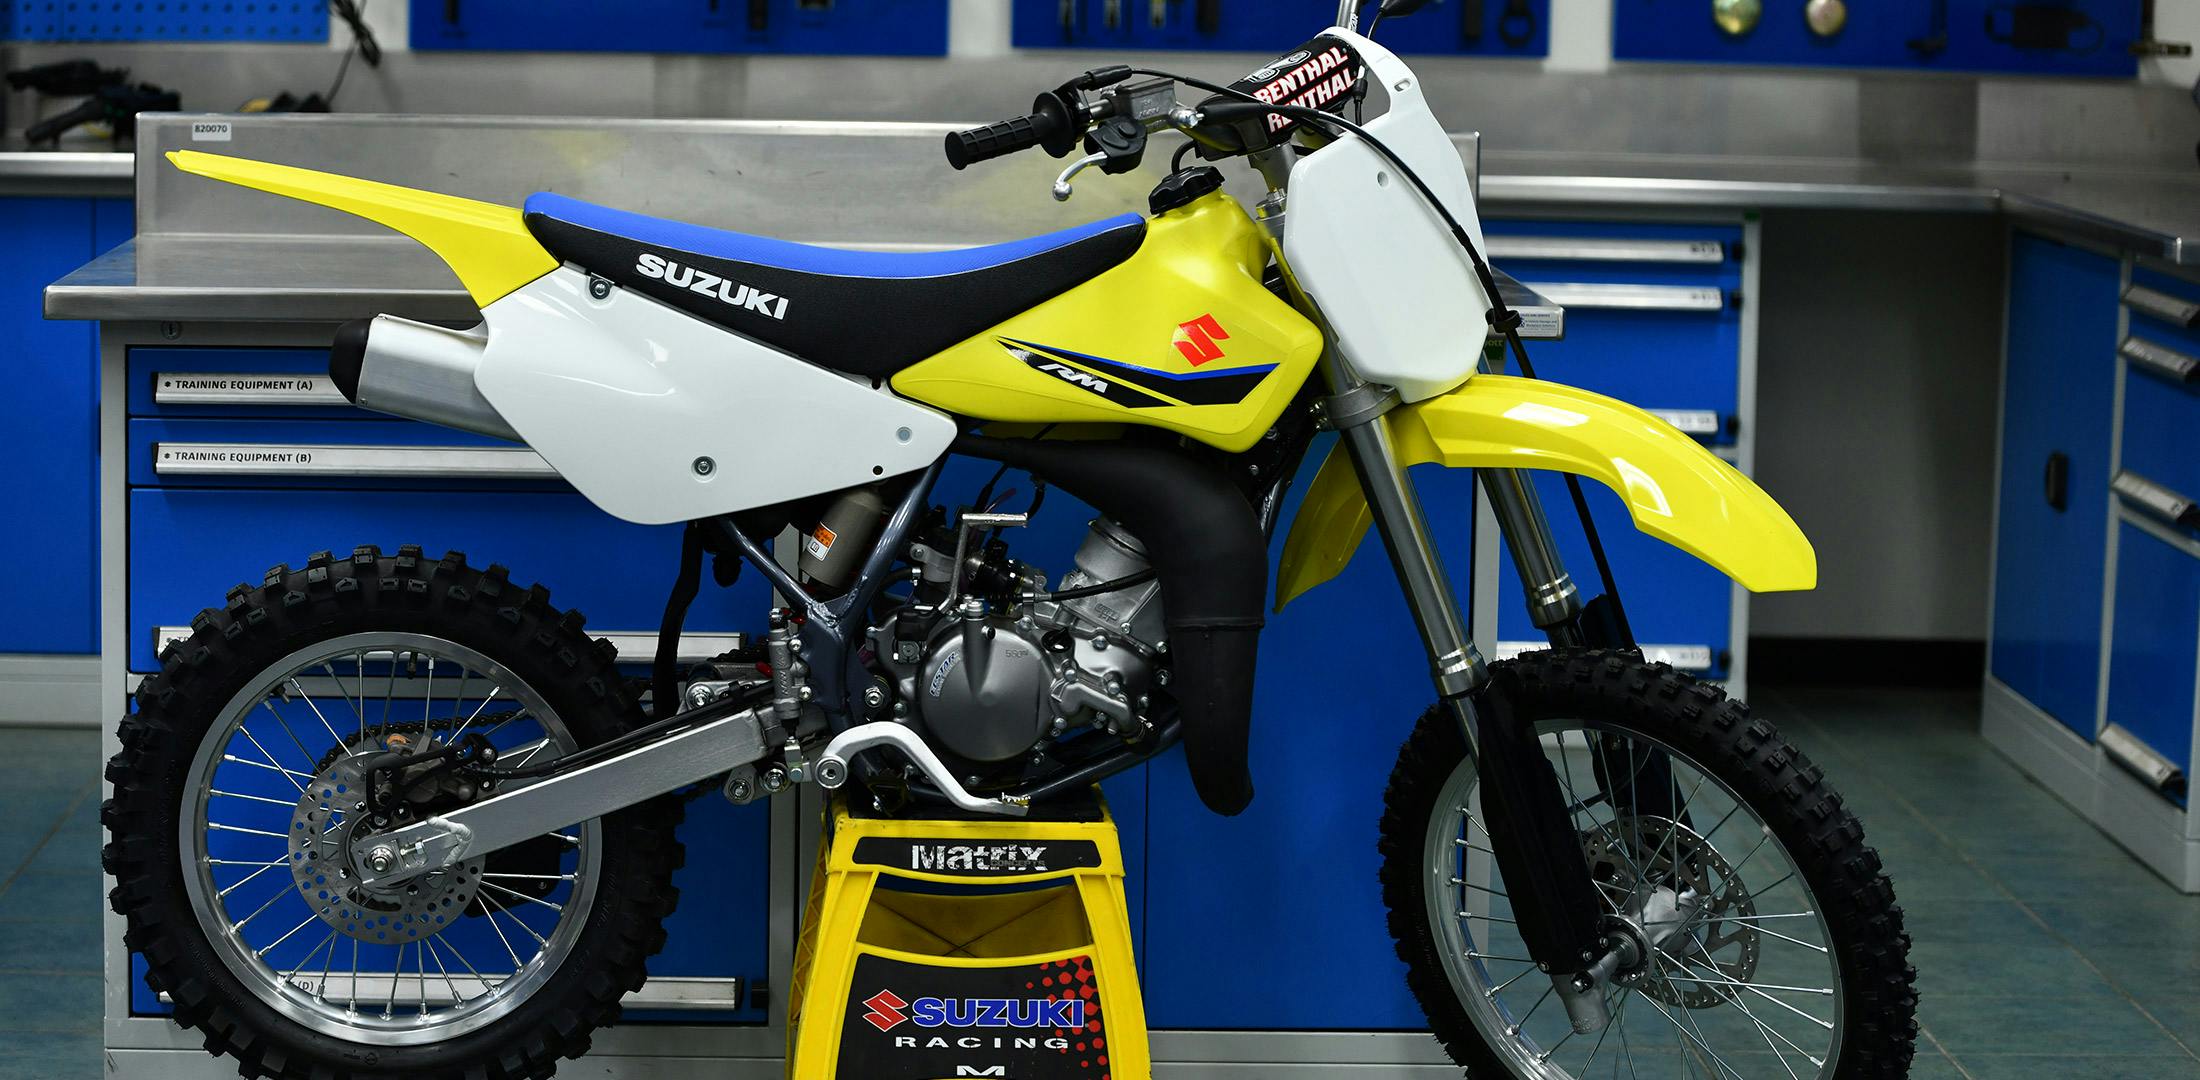 Suzuki RM85L in champion yellow colour